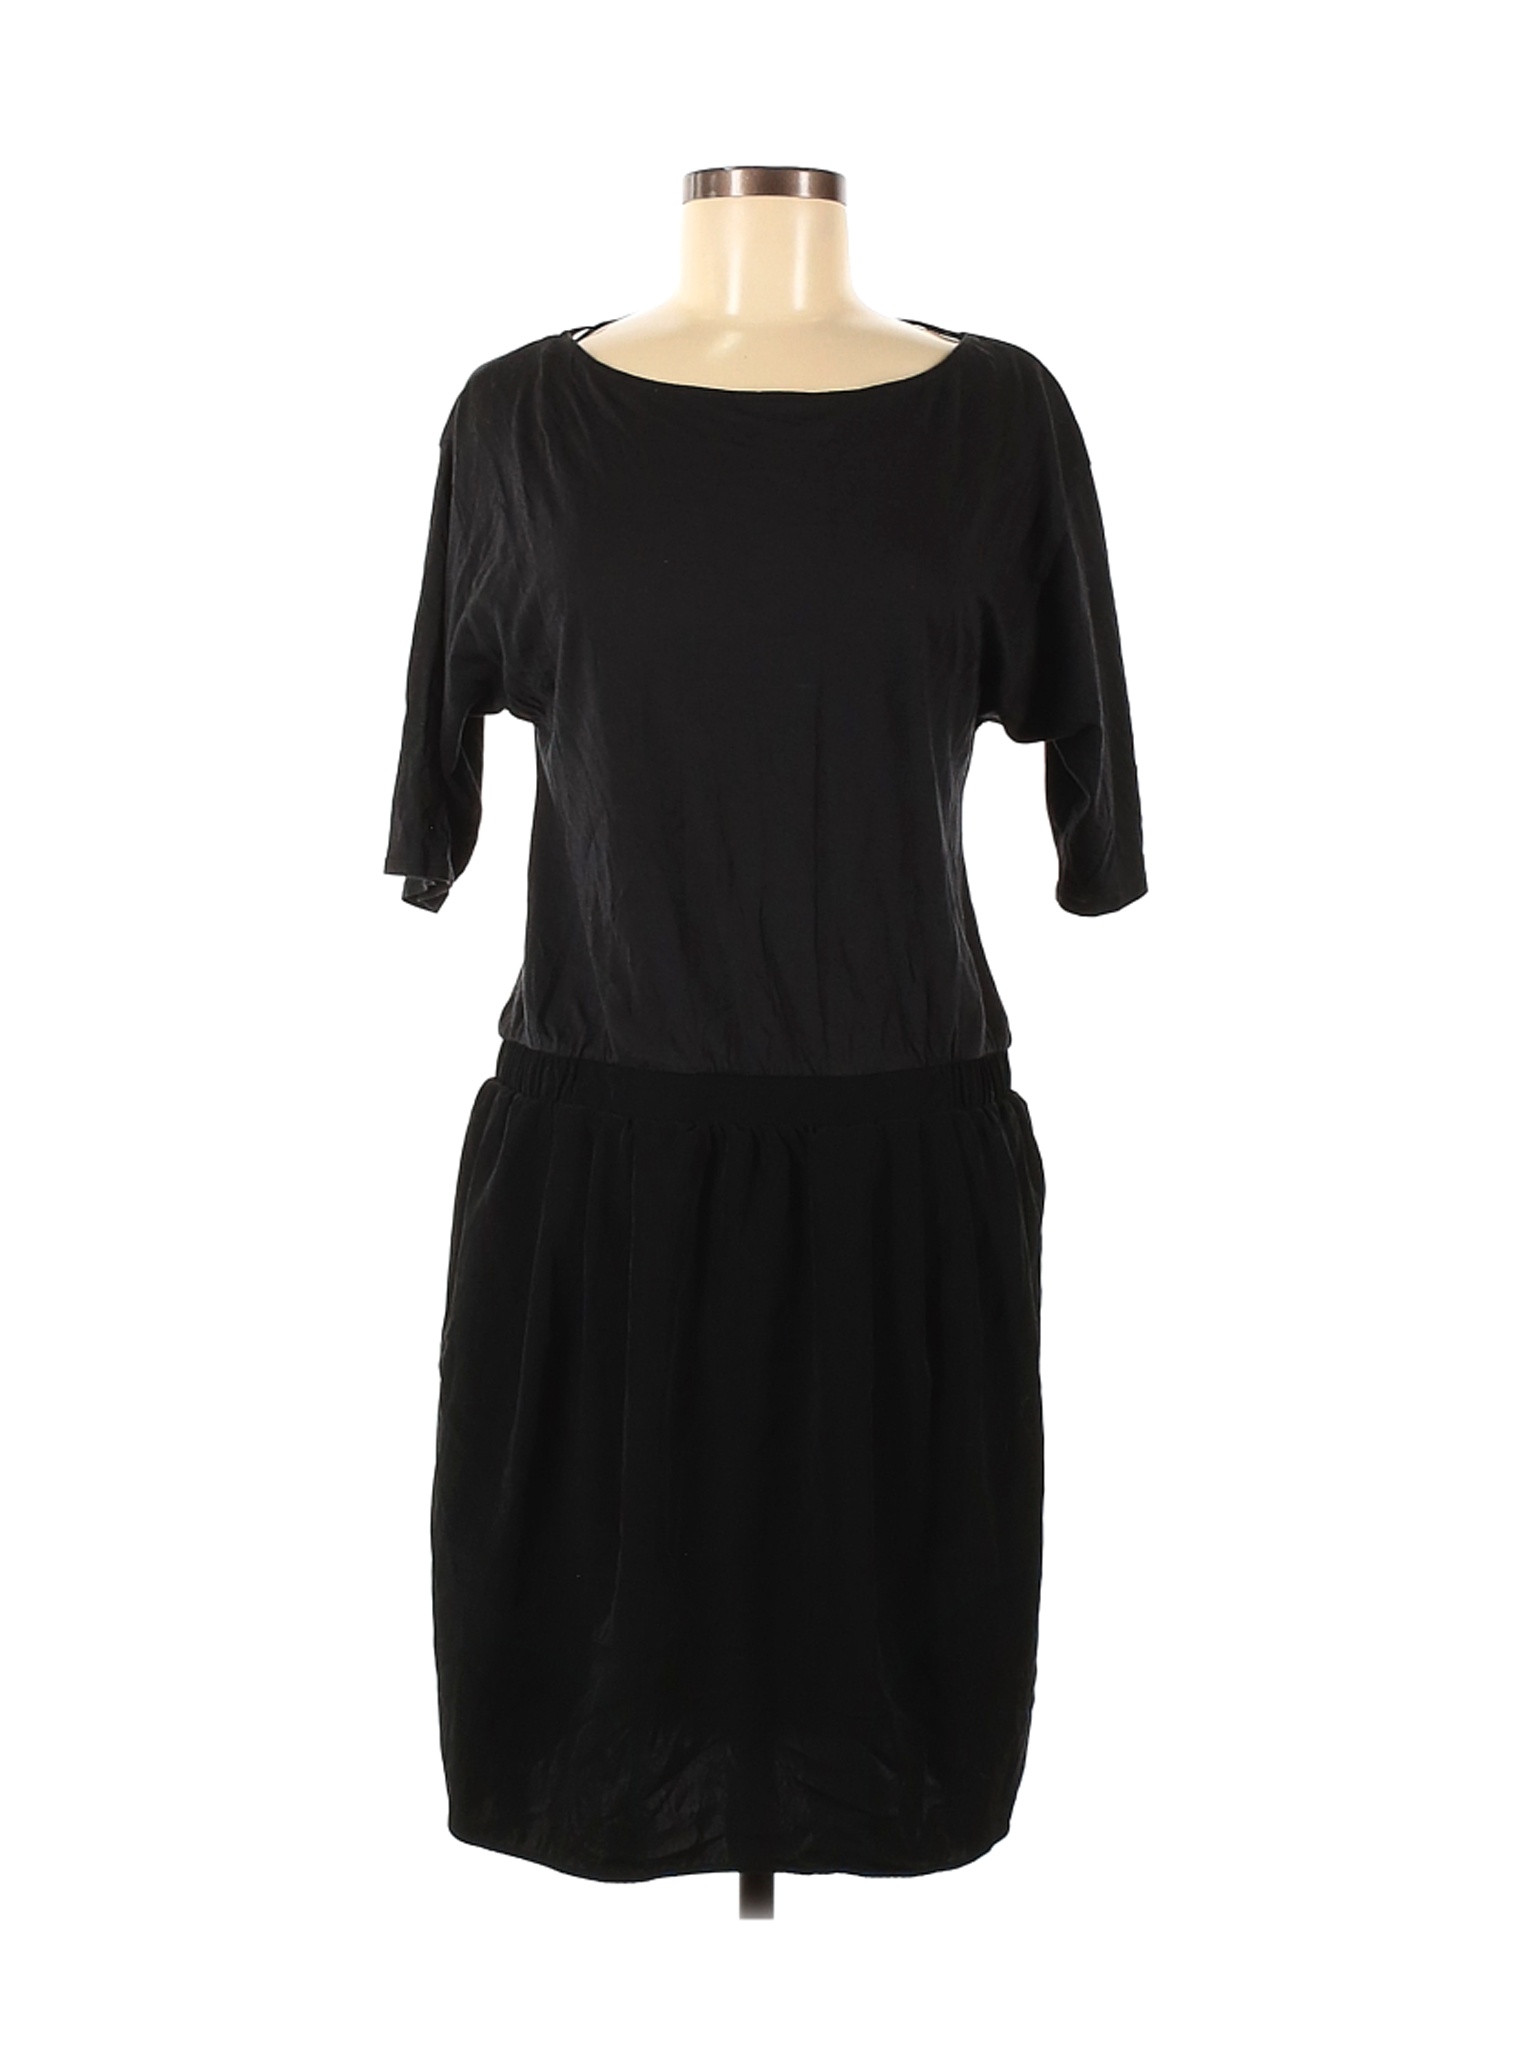 Uniqlo Women Black Casual Dress M | eBay